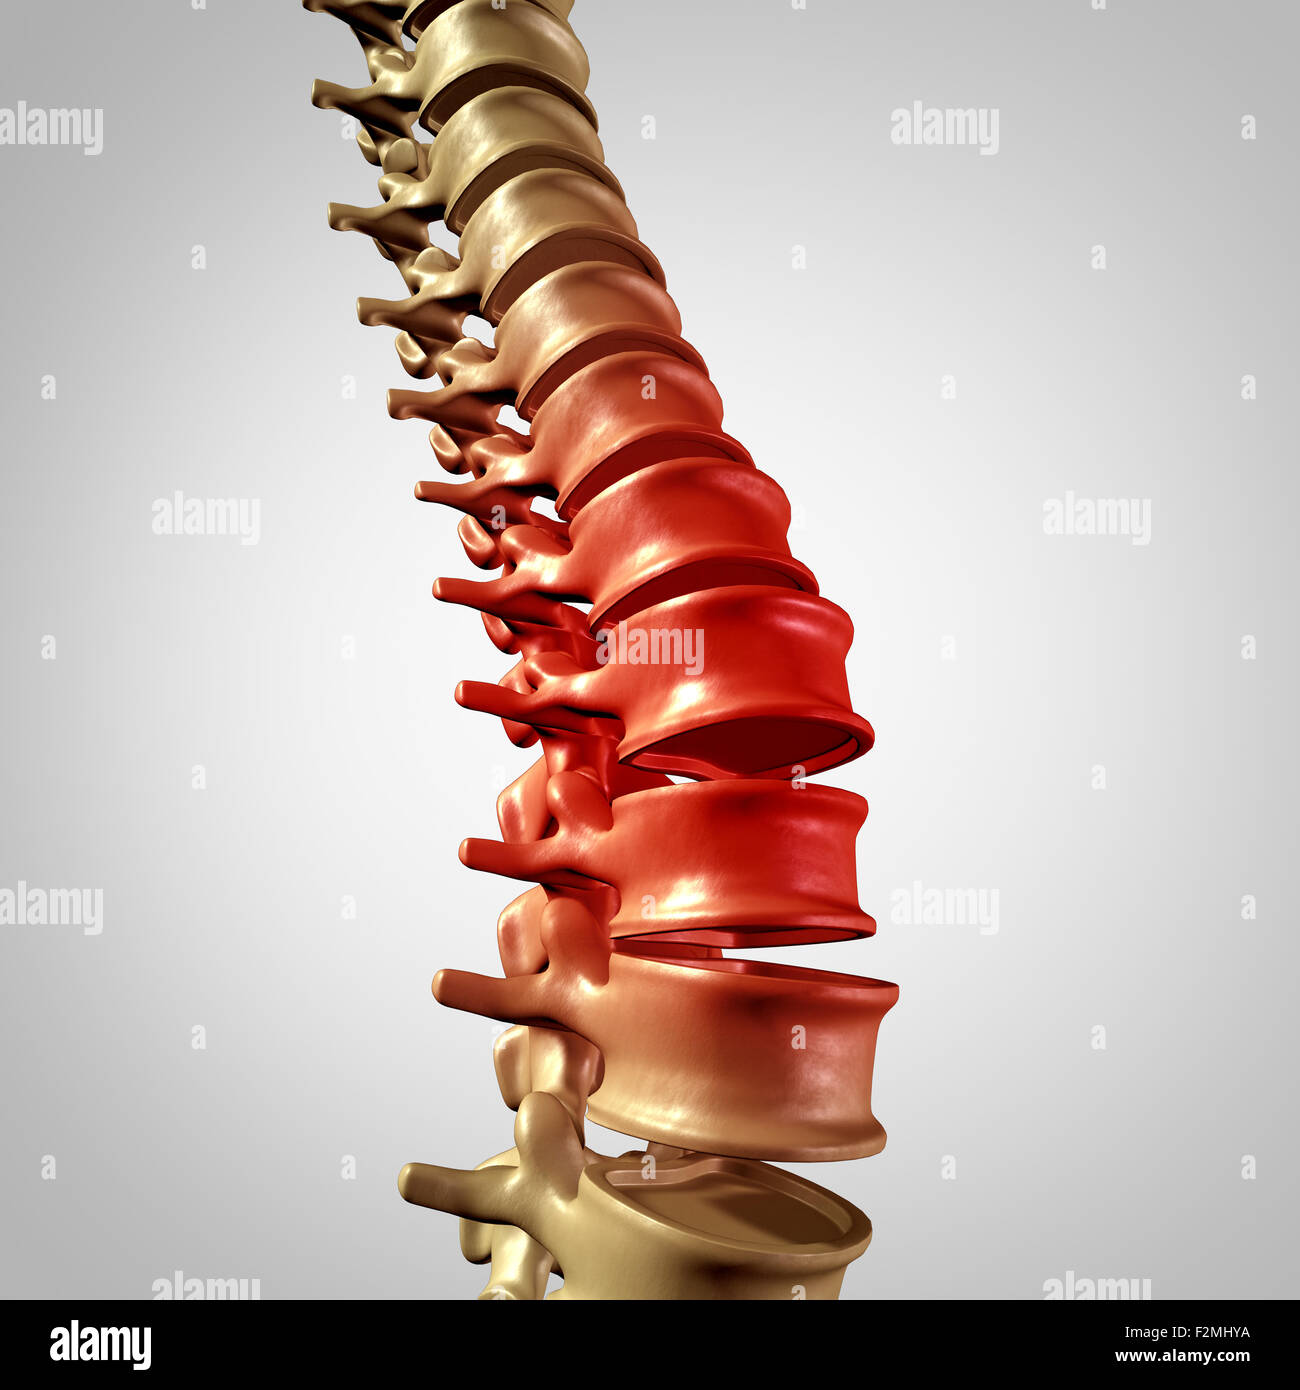 Rückenschmerzen, unteren Rücken Krankheit und menschlichen Rückenschmerzen mit einem drei dimensionalen Wirbelsäule Körper Skelett zeigt die Wirbel und Wirbelsäule in leuchtenden Rot unterstreichen als ein medizinisches Gesundheits-Konzept für Gelenkschmerzen. Stockfoto